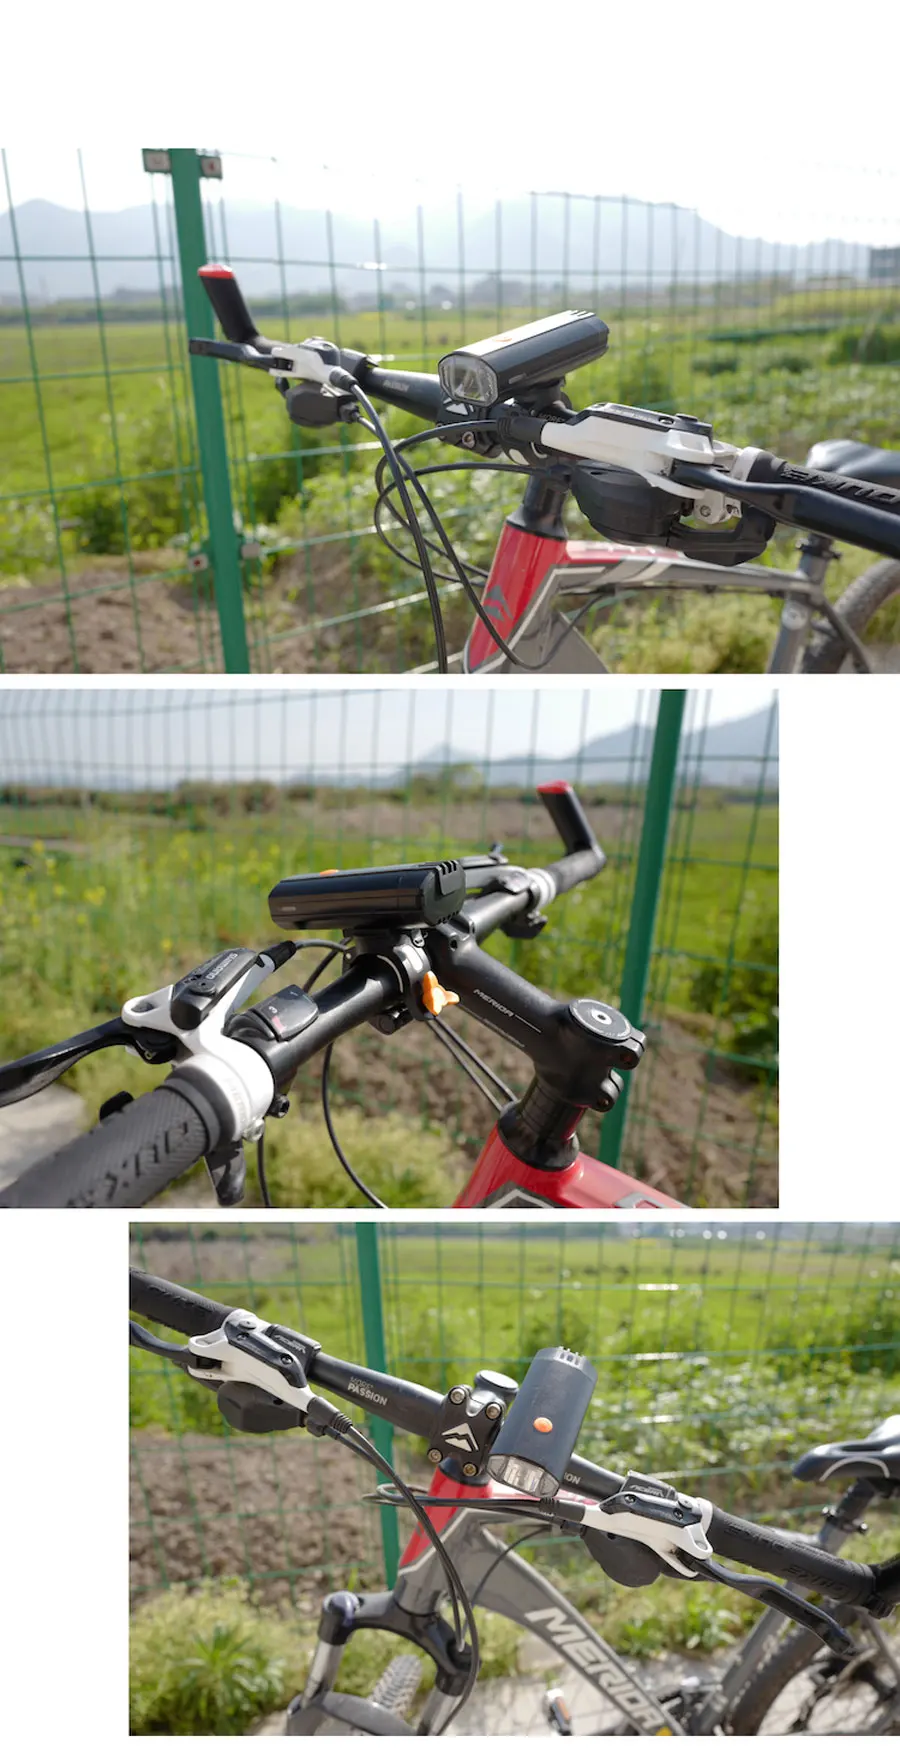 NEWBOLER 4000 mAh велосипедный фонарь MTB велосипед фара power Bank USB Перезаряжаемый велосипедный фонарь со светодиодами для велосипеда аксессуар